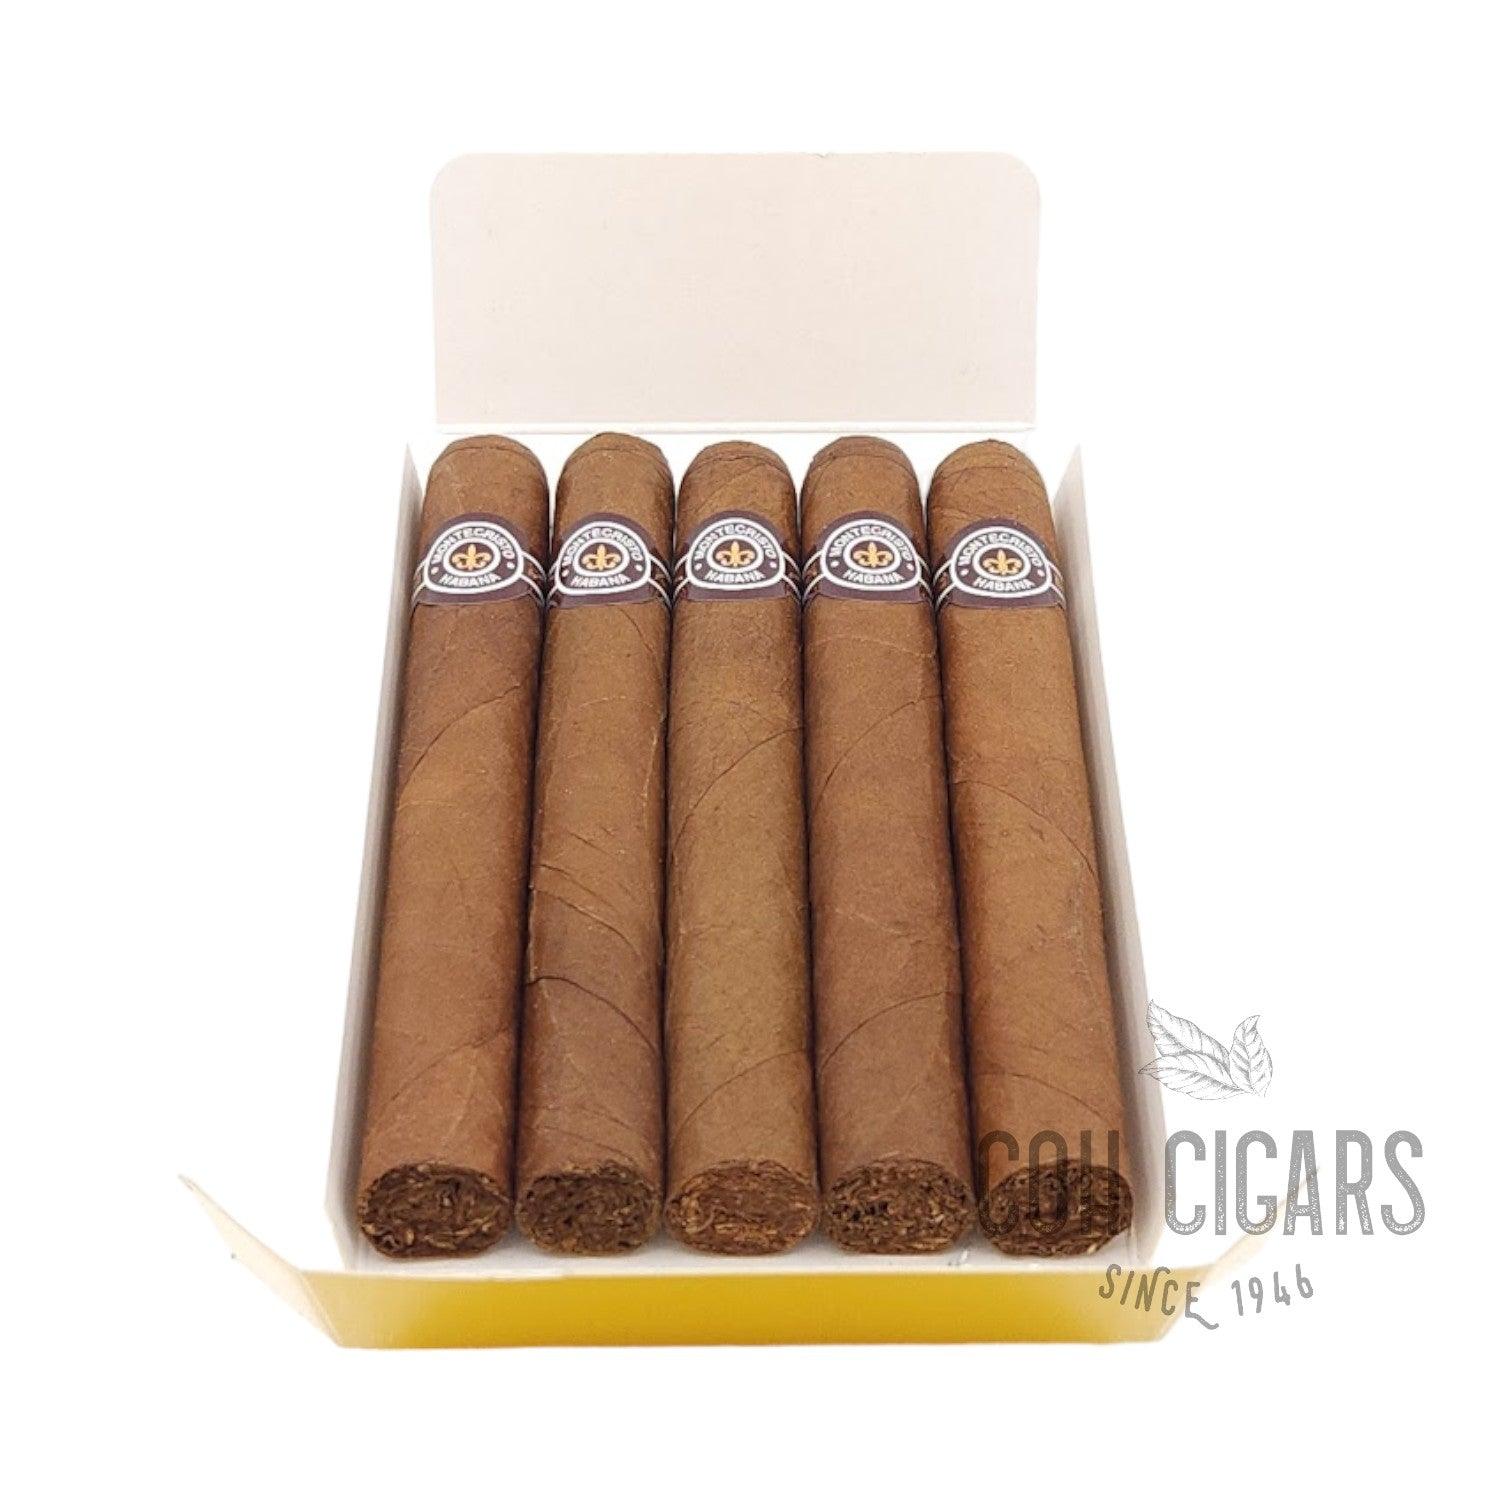 Montecristo Cigar | No.4 | Box 5x5 - hk.cohcigars